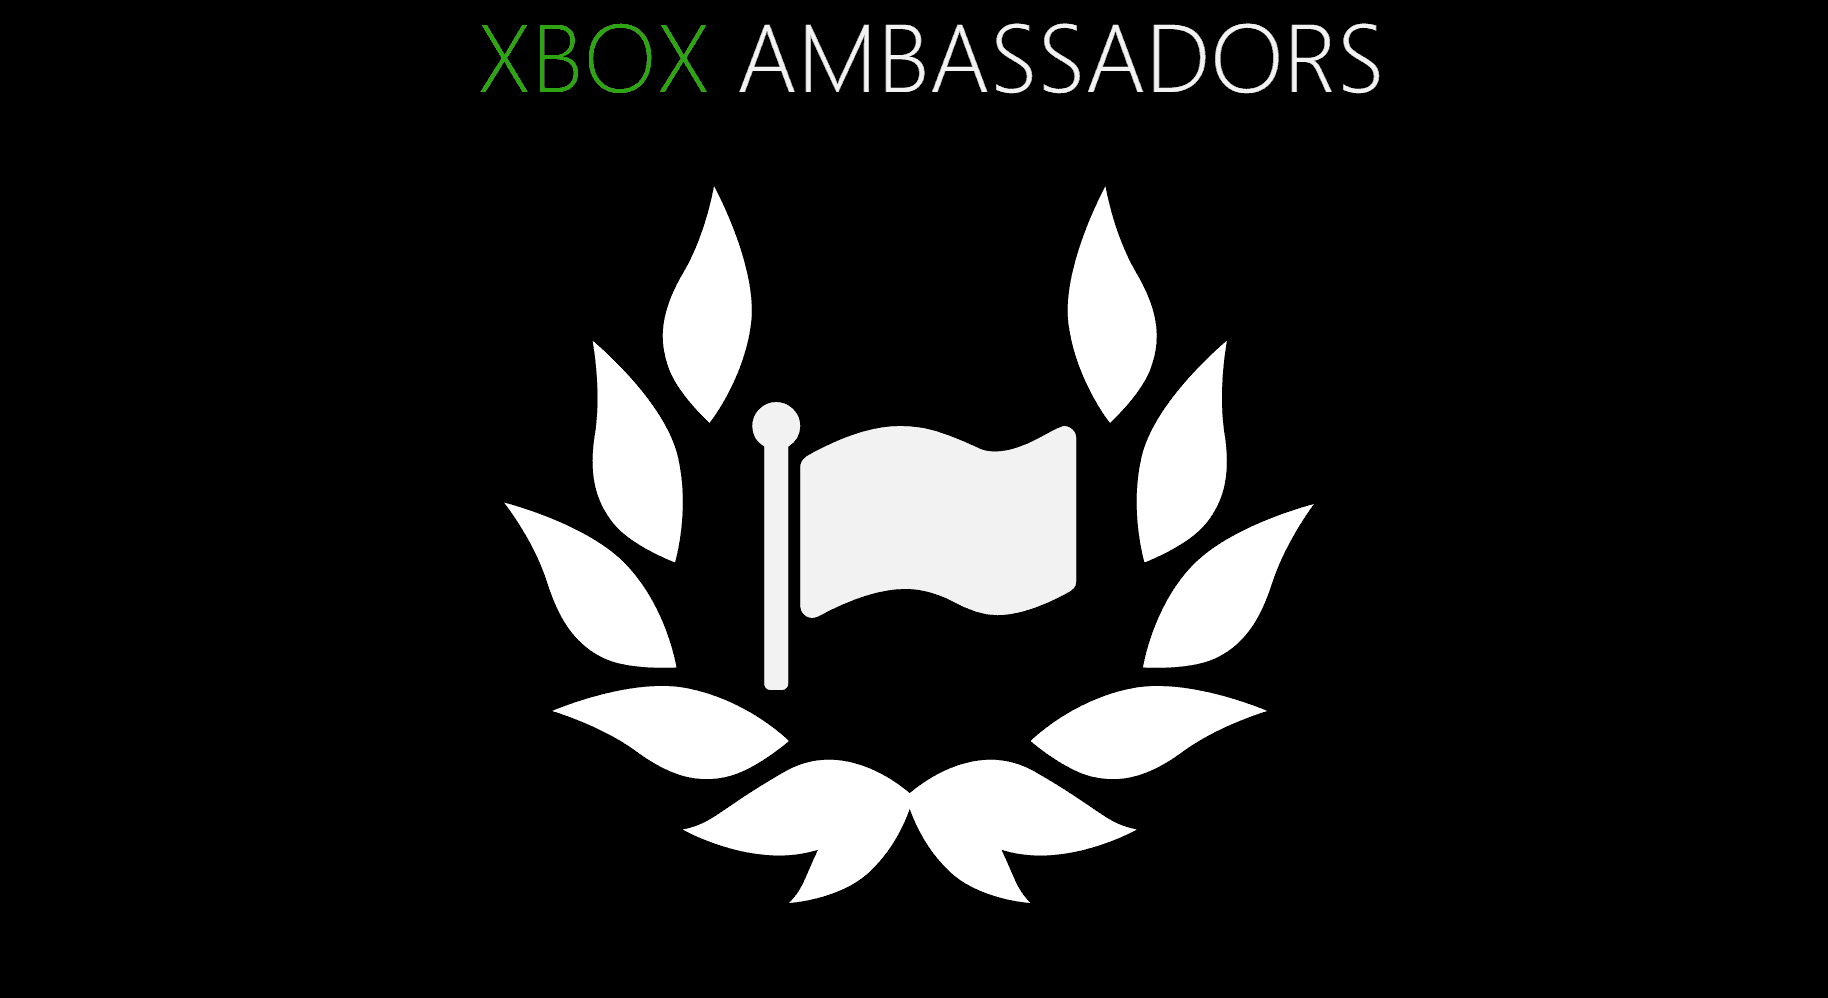 Xbox Ambassadors get a brand new website - OnMSFT.com